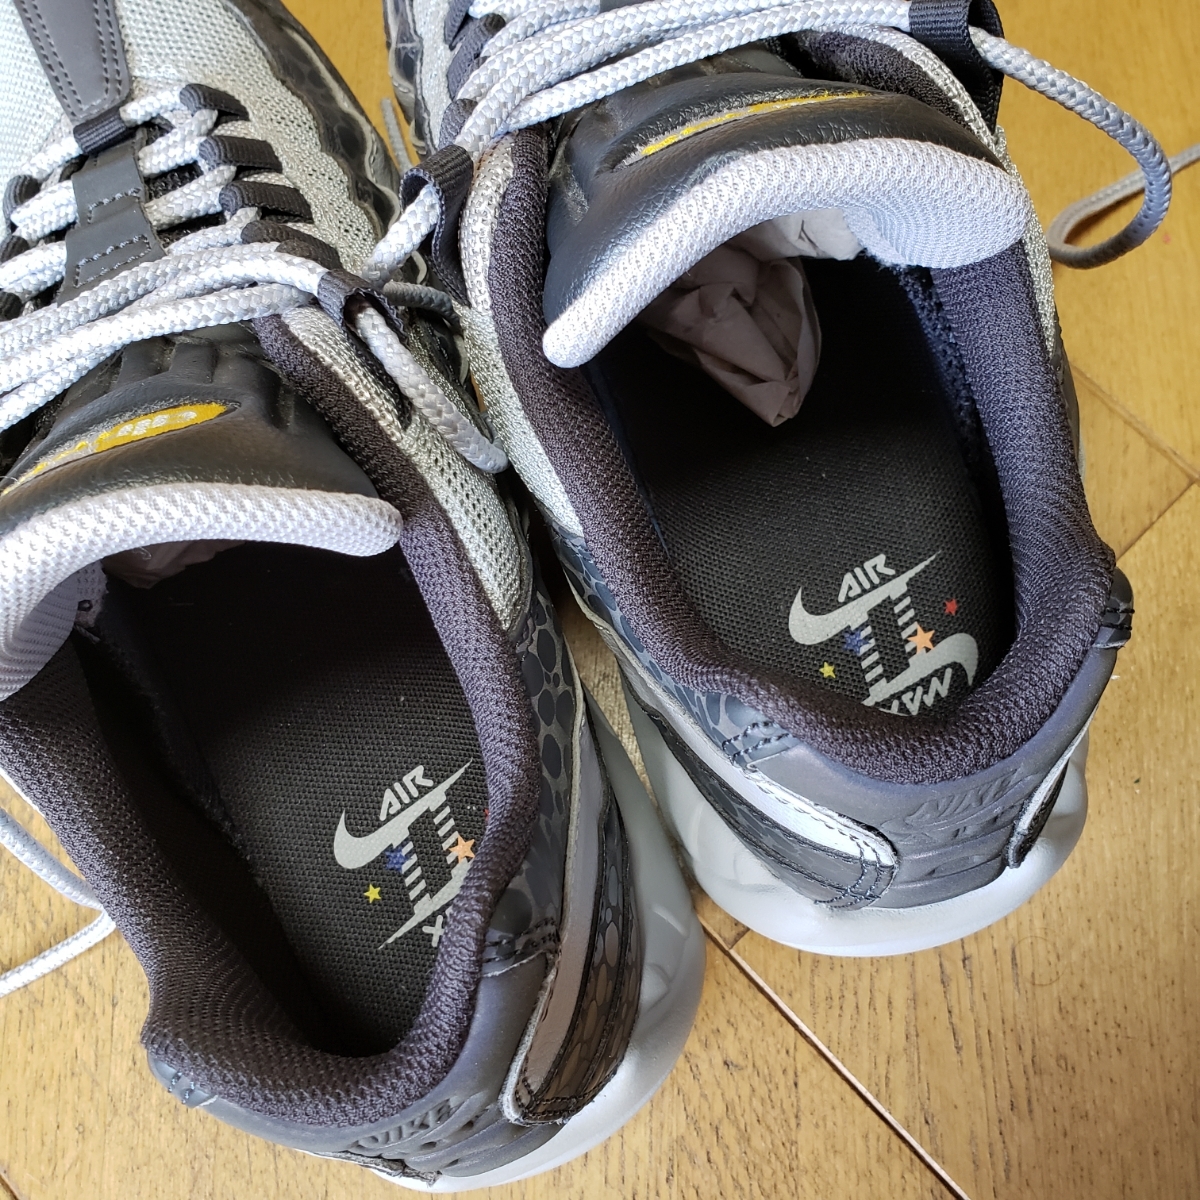 元箱付 NIKE ナイキ AIRMAX エア マックス 95 リフレクティブ SE 27cm スニーカー US9 ランニング running シューズ sneaker 運動 shoes 靴